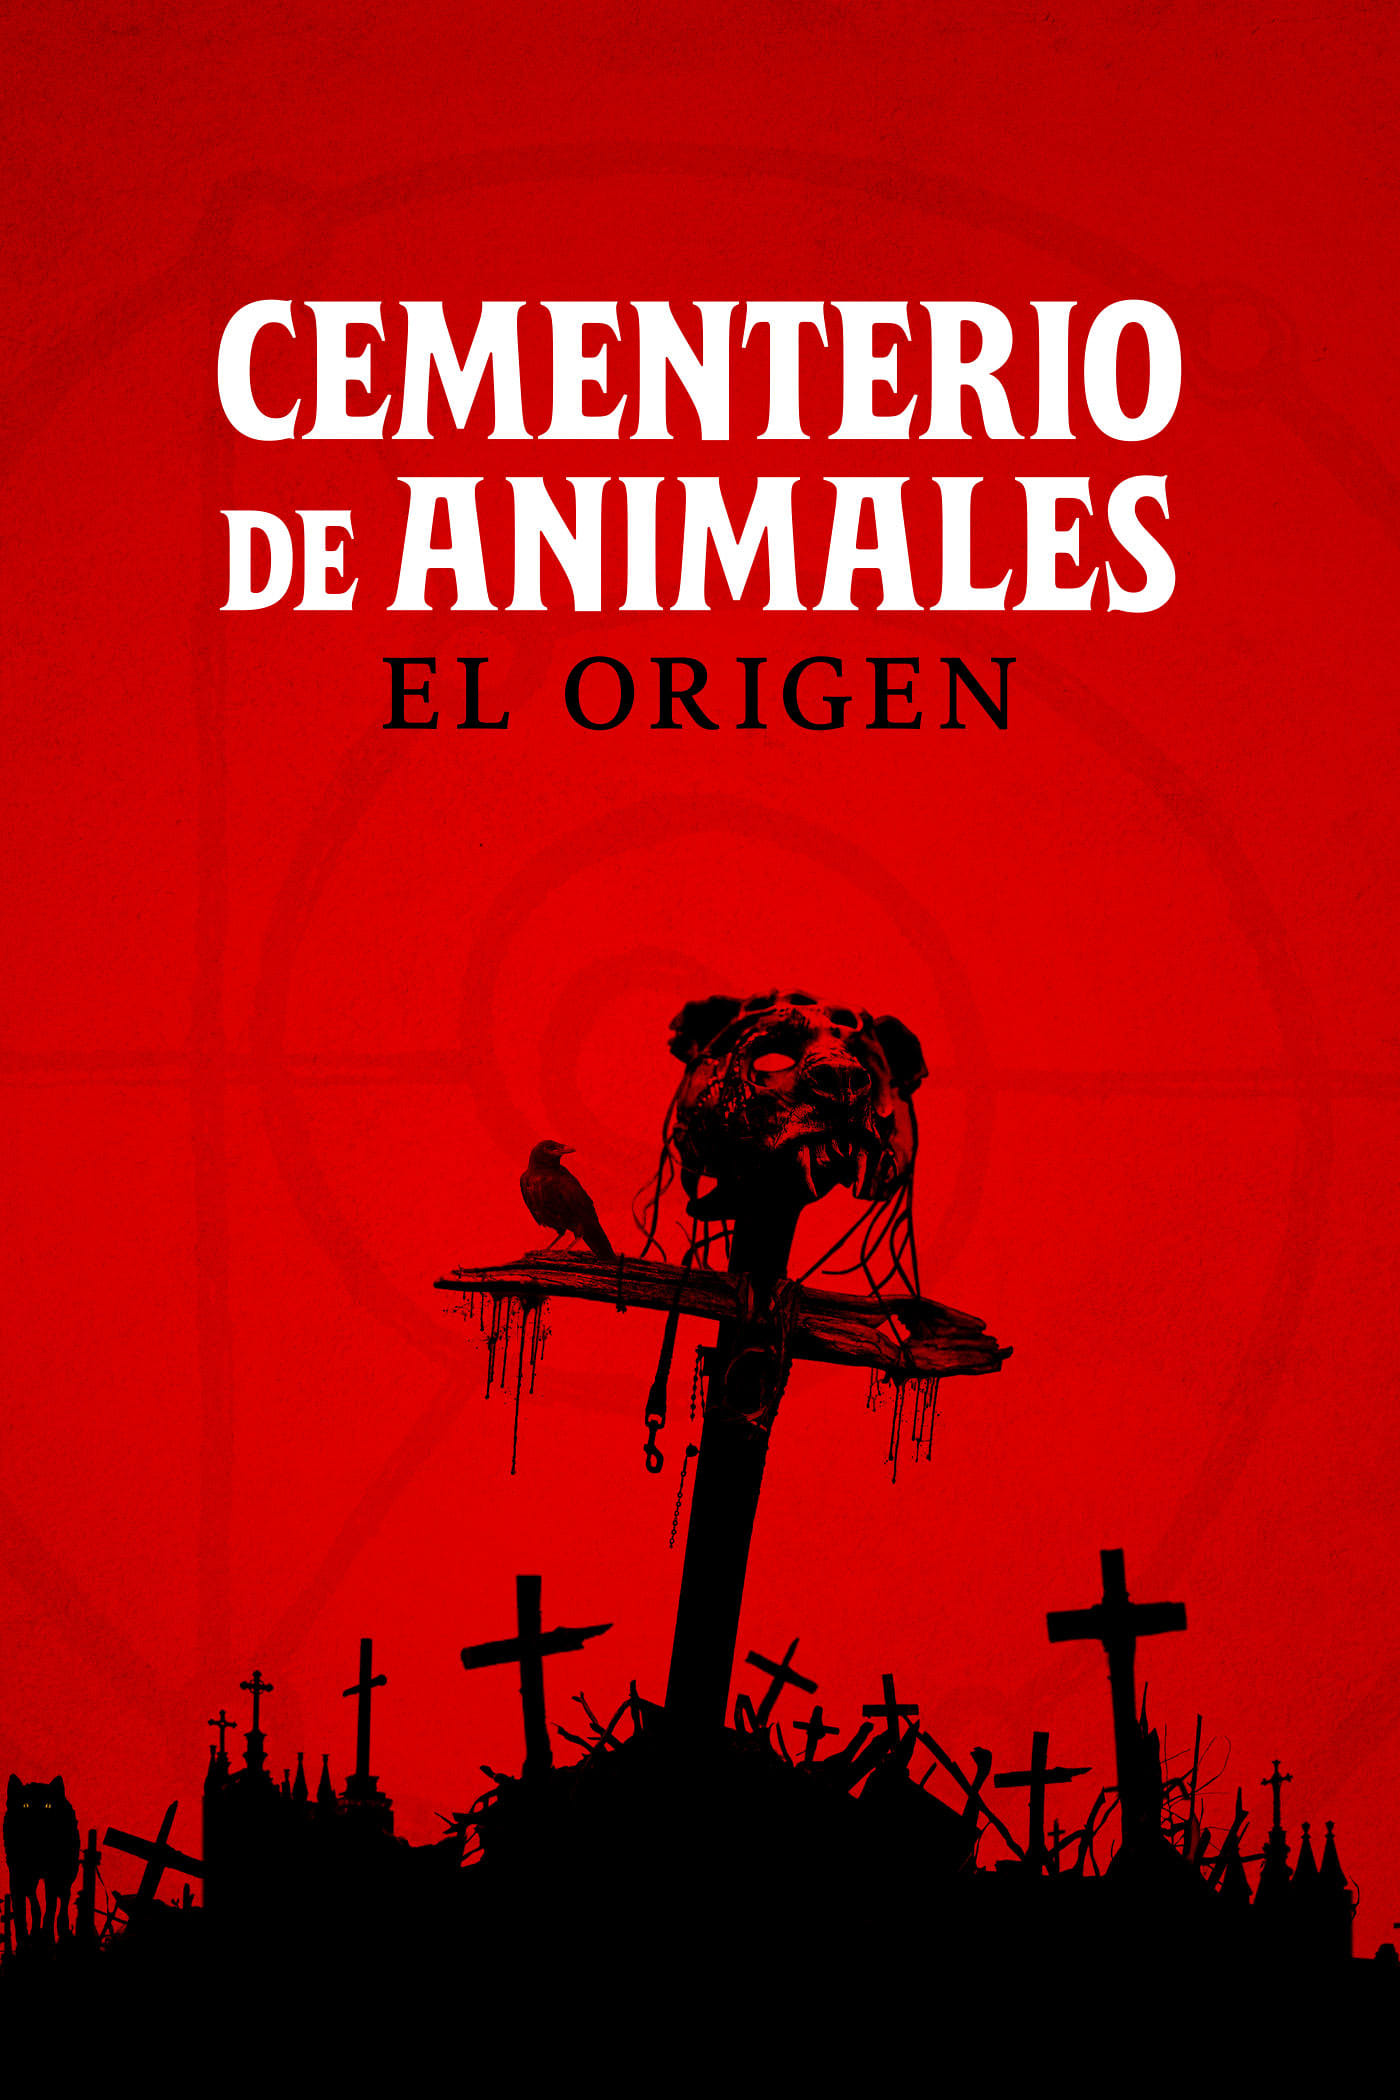 Cementerio De Mascotas El Origen